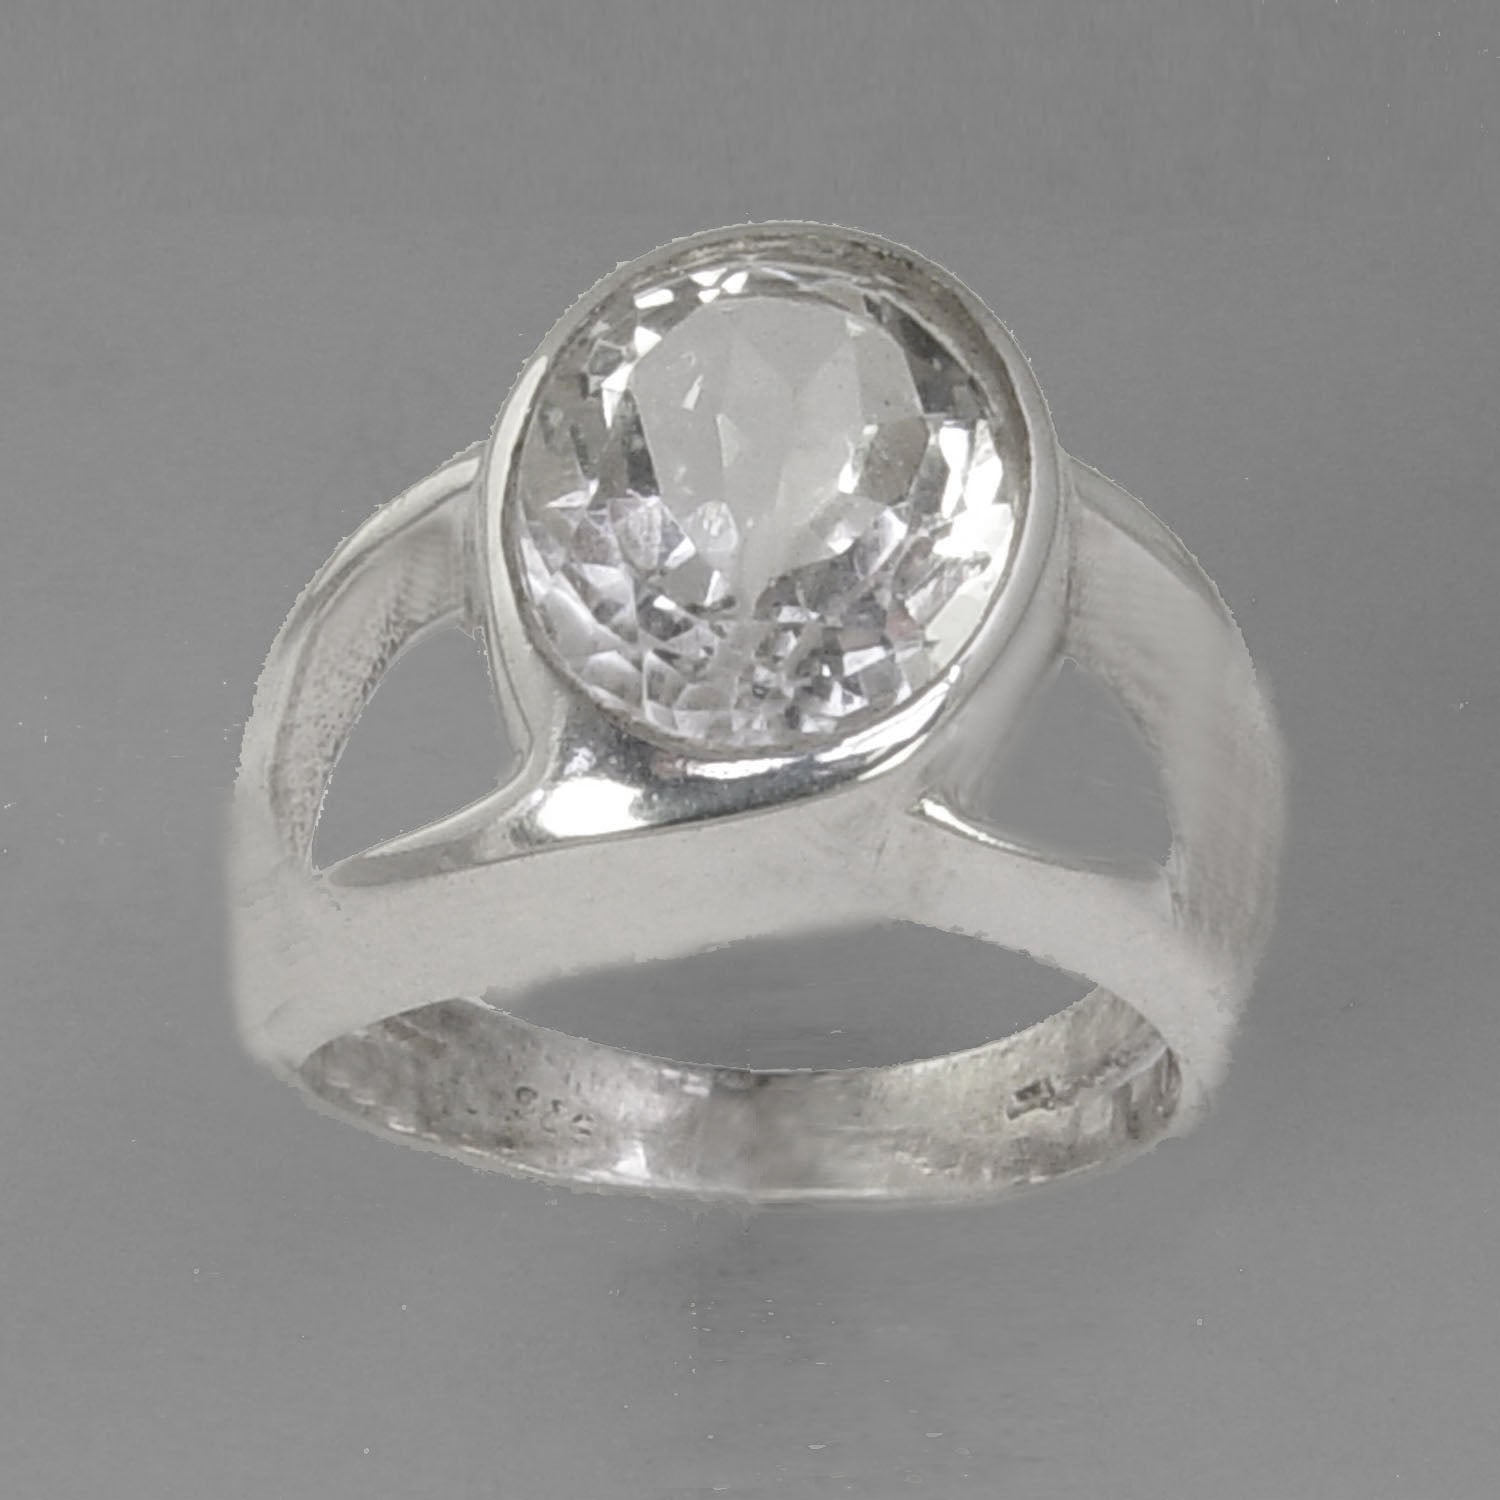 Quartz Crystal 4 ct Oval Bezel Offset Split Shank Sterling Silver Ring, Size 9.5